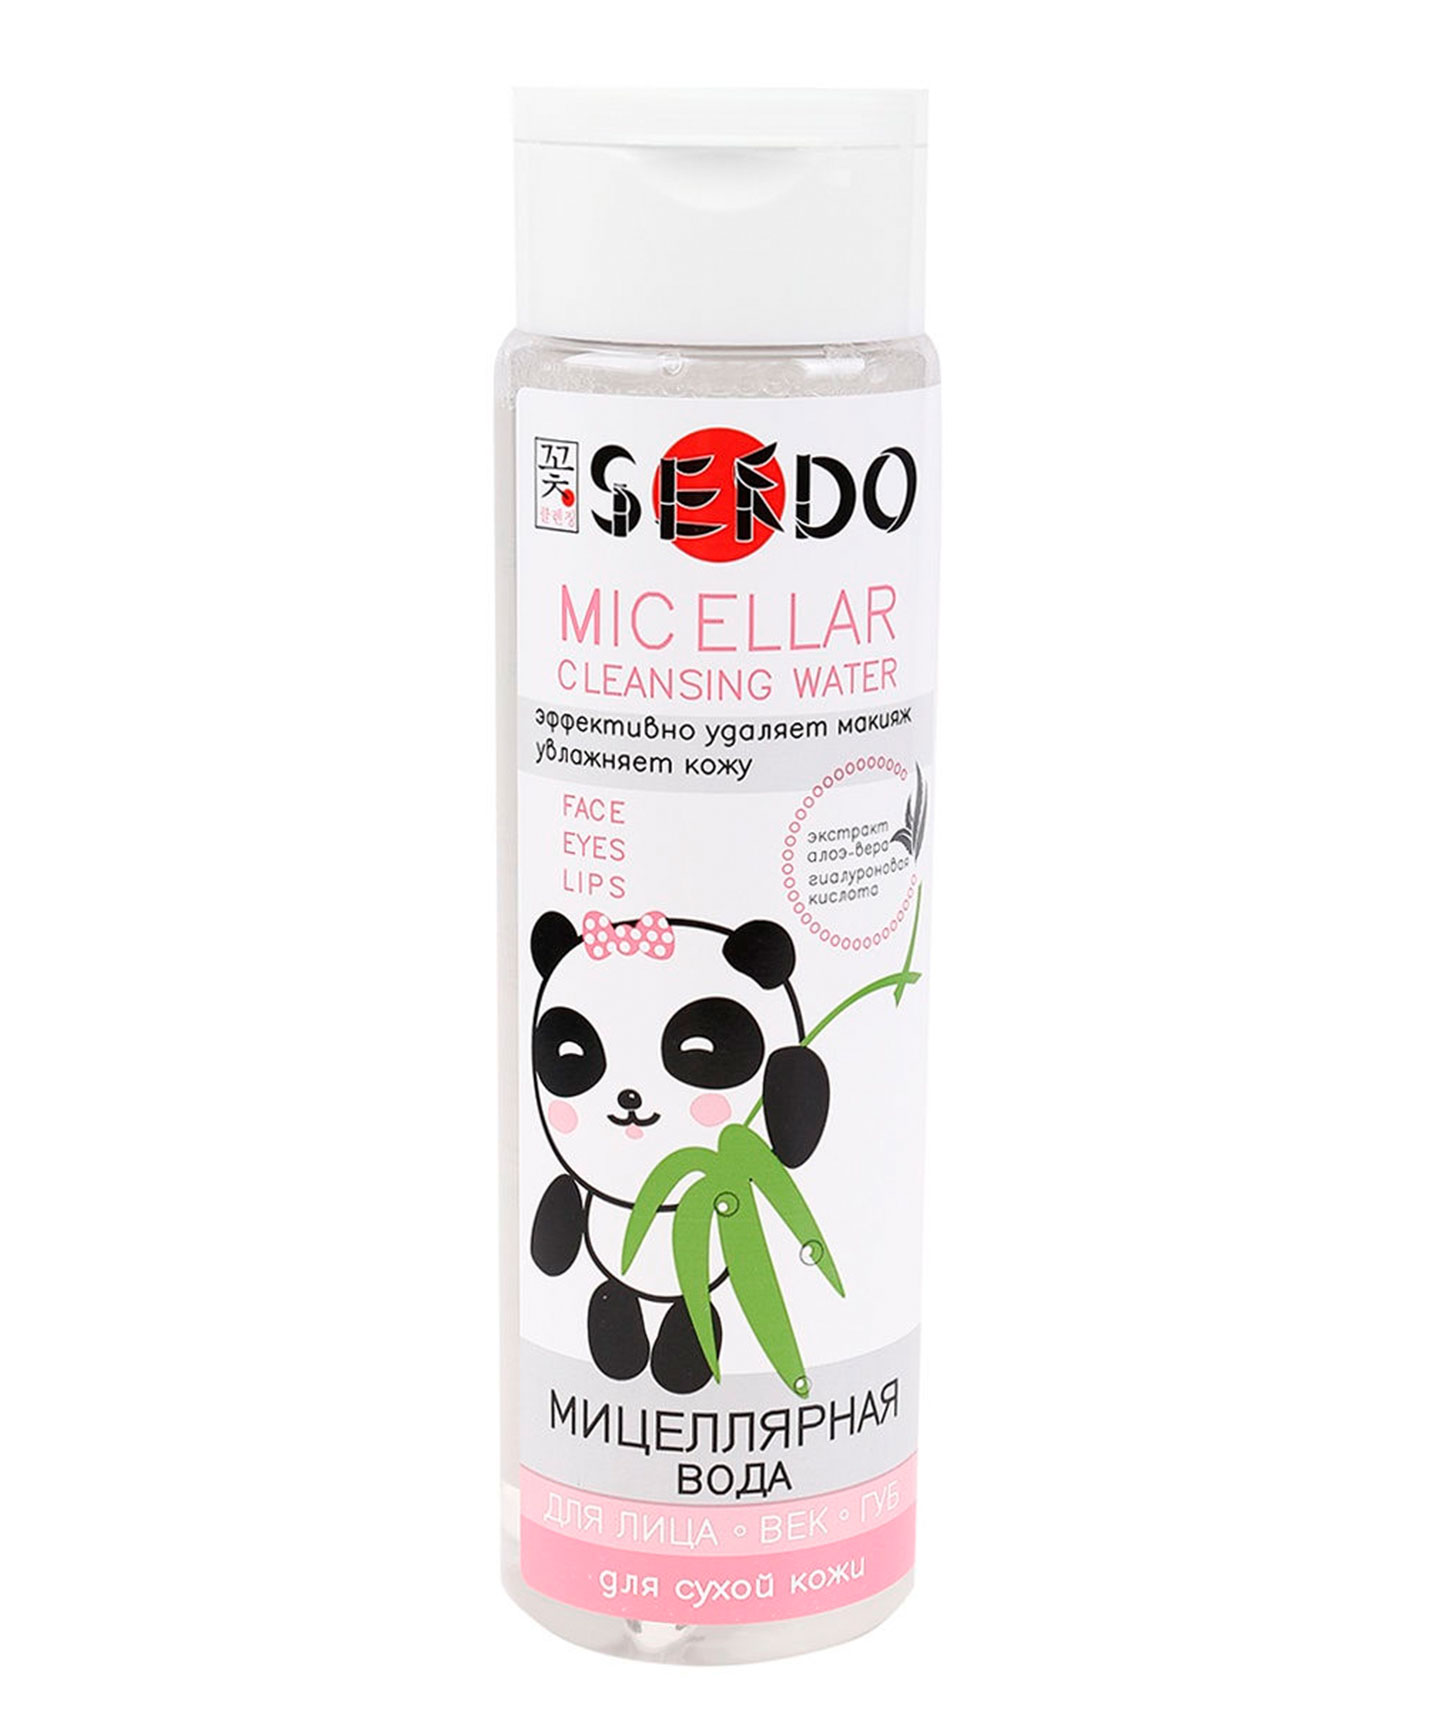 Мицеллярная вода «Sendo» для сухой кожи